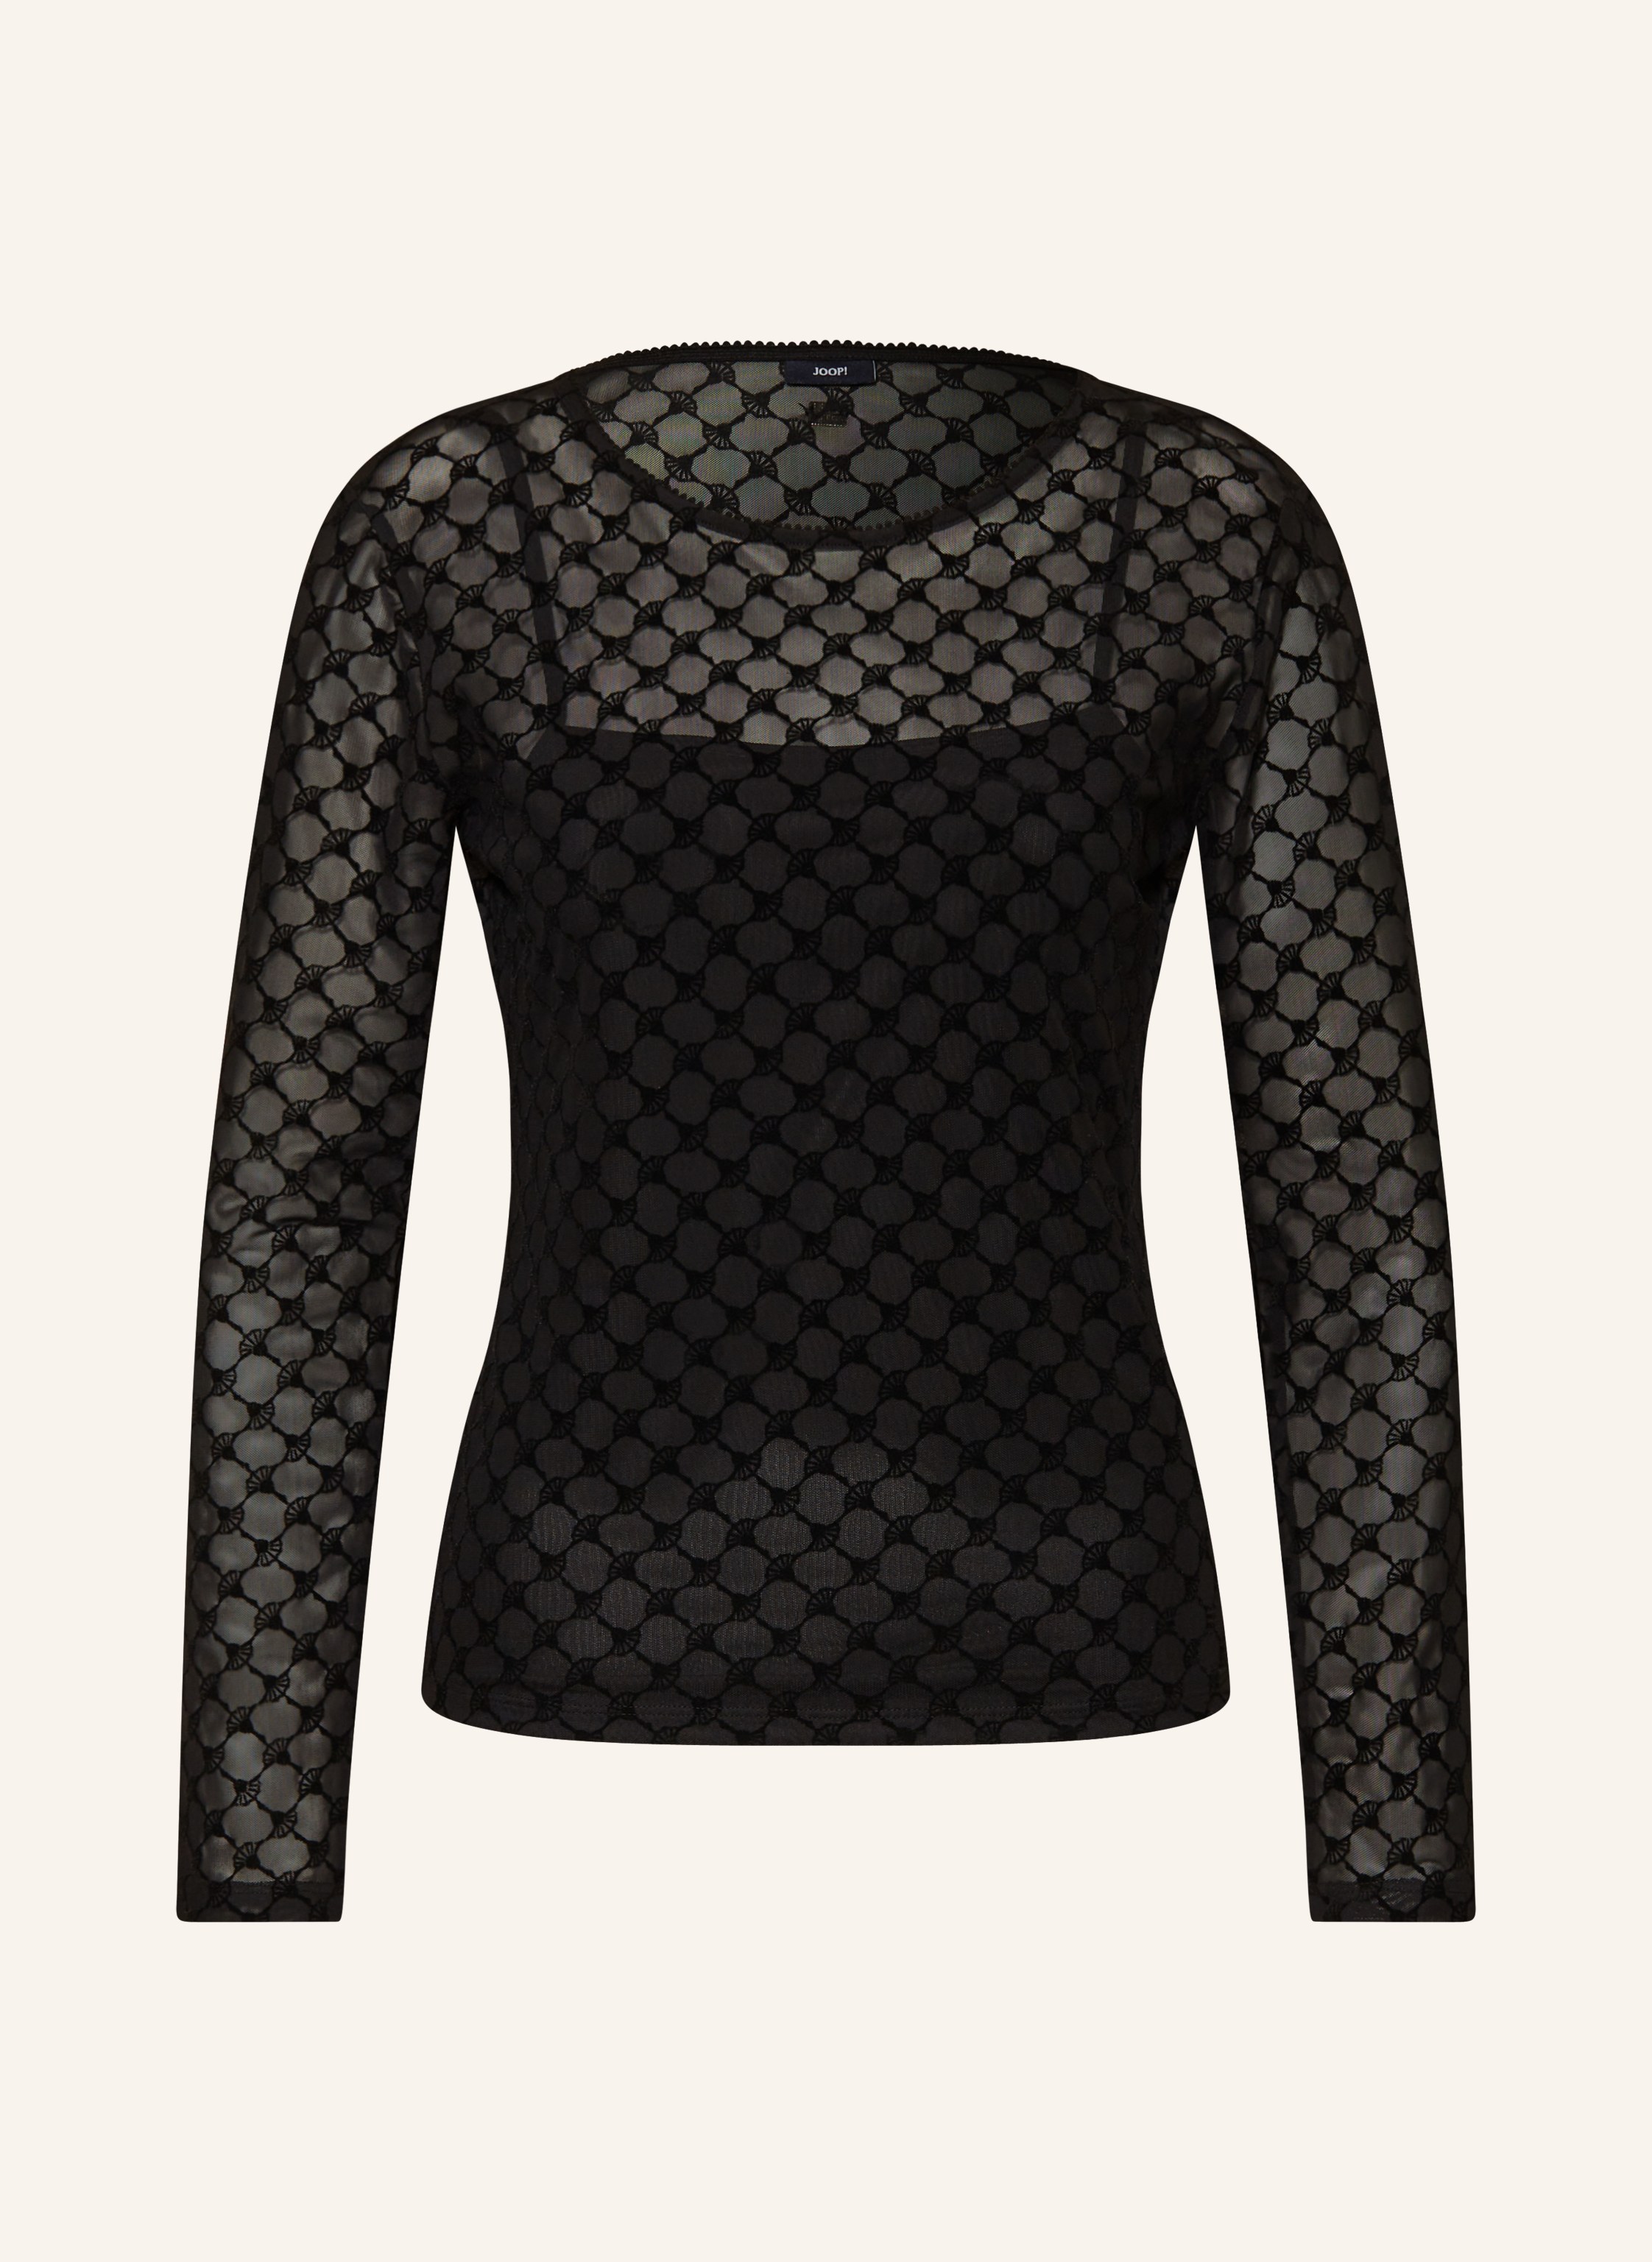 JOOP! Long sleeve shirt in mesh in black